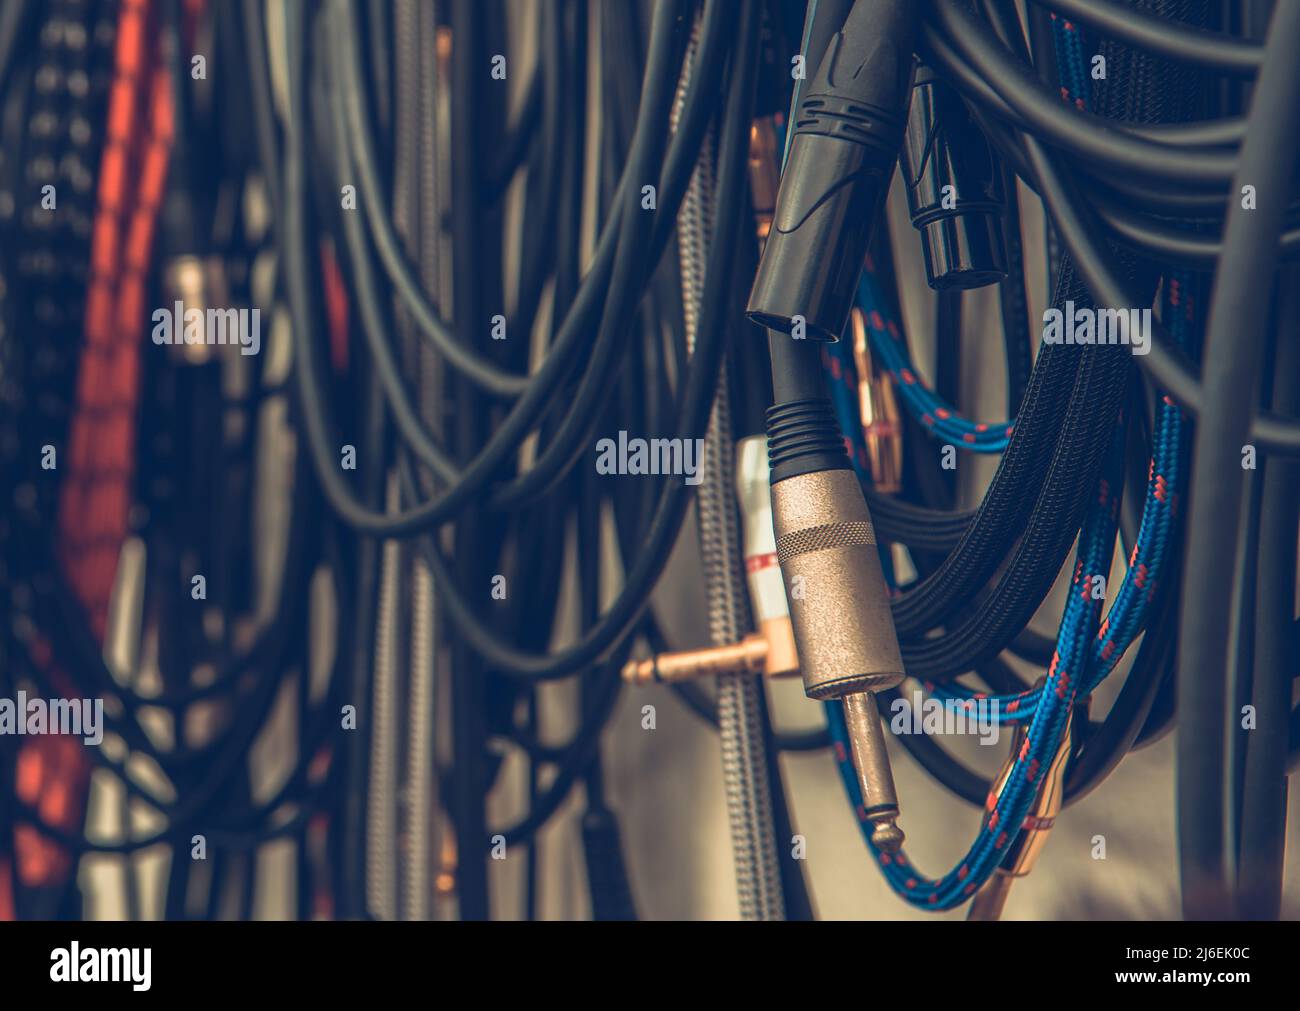 elektrische Anschlüsse Kabel USB-Stecker Stecker Wasserkocher Blei führt  nützliche alltägliche Klinkenkabel Kopie Raum weißen Hintergrund  ausschneiden Stockfotografie - Alamy